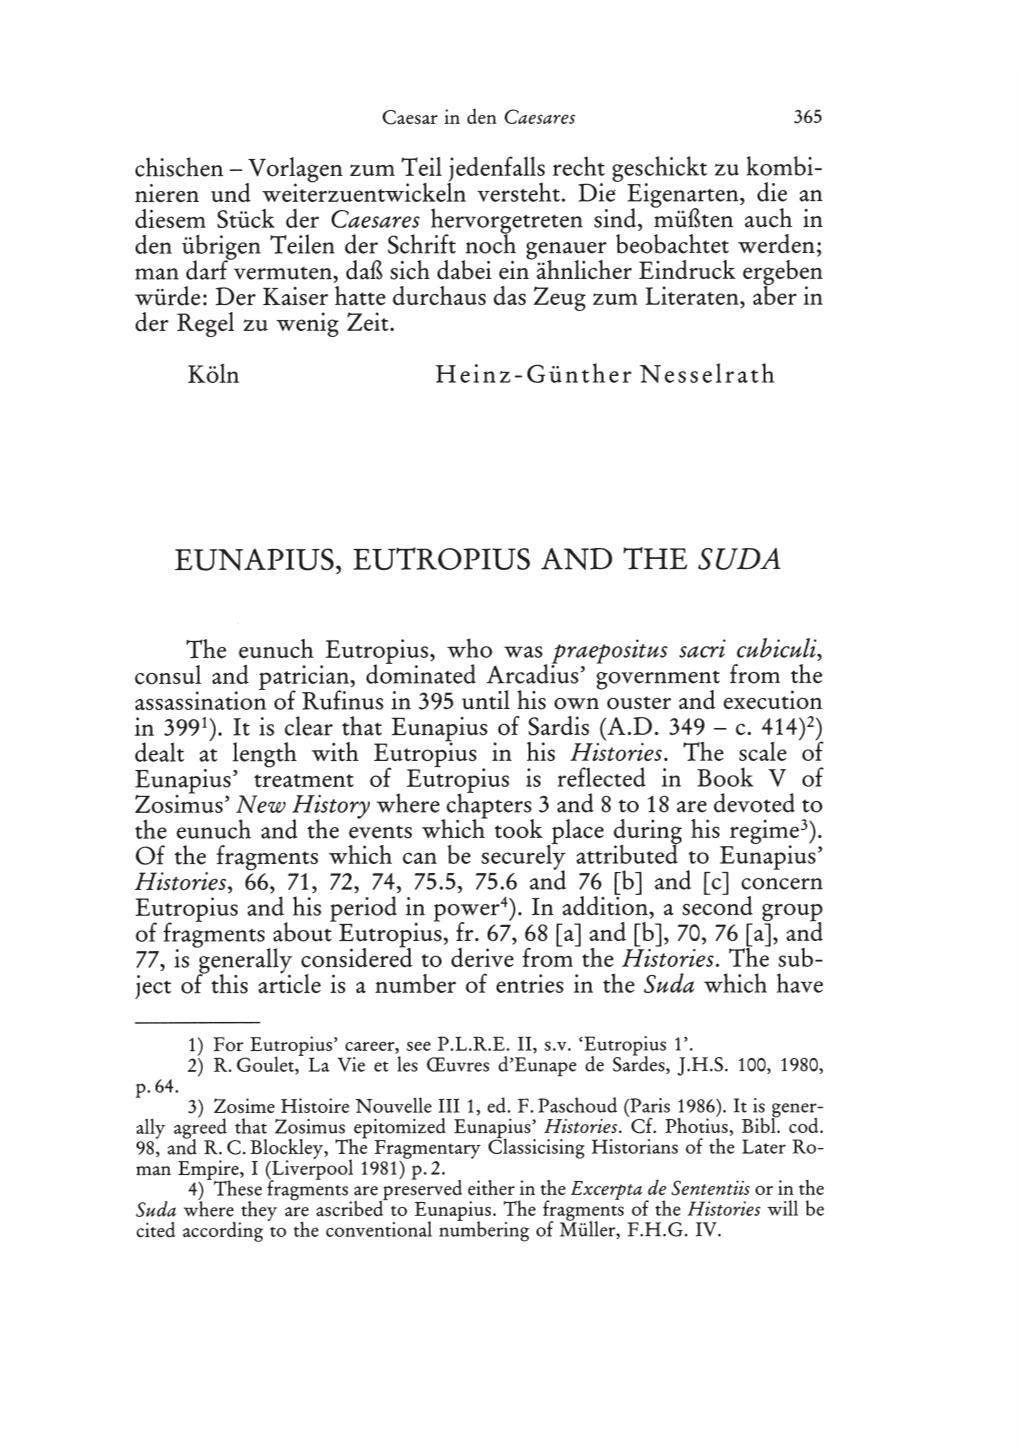 Eunapius, Eutropius and the Suda